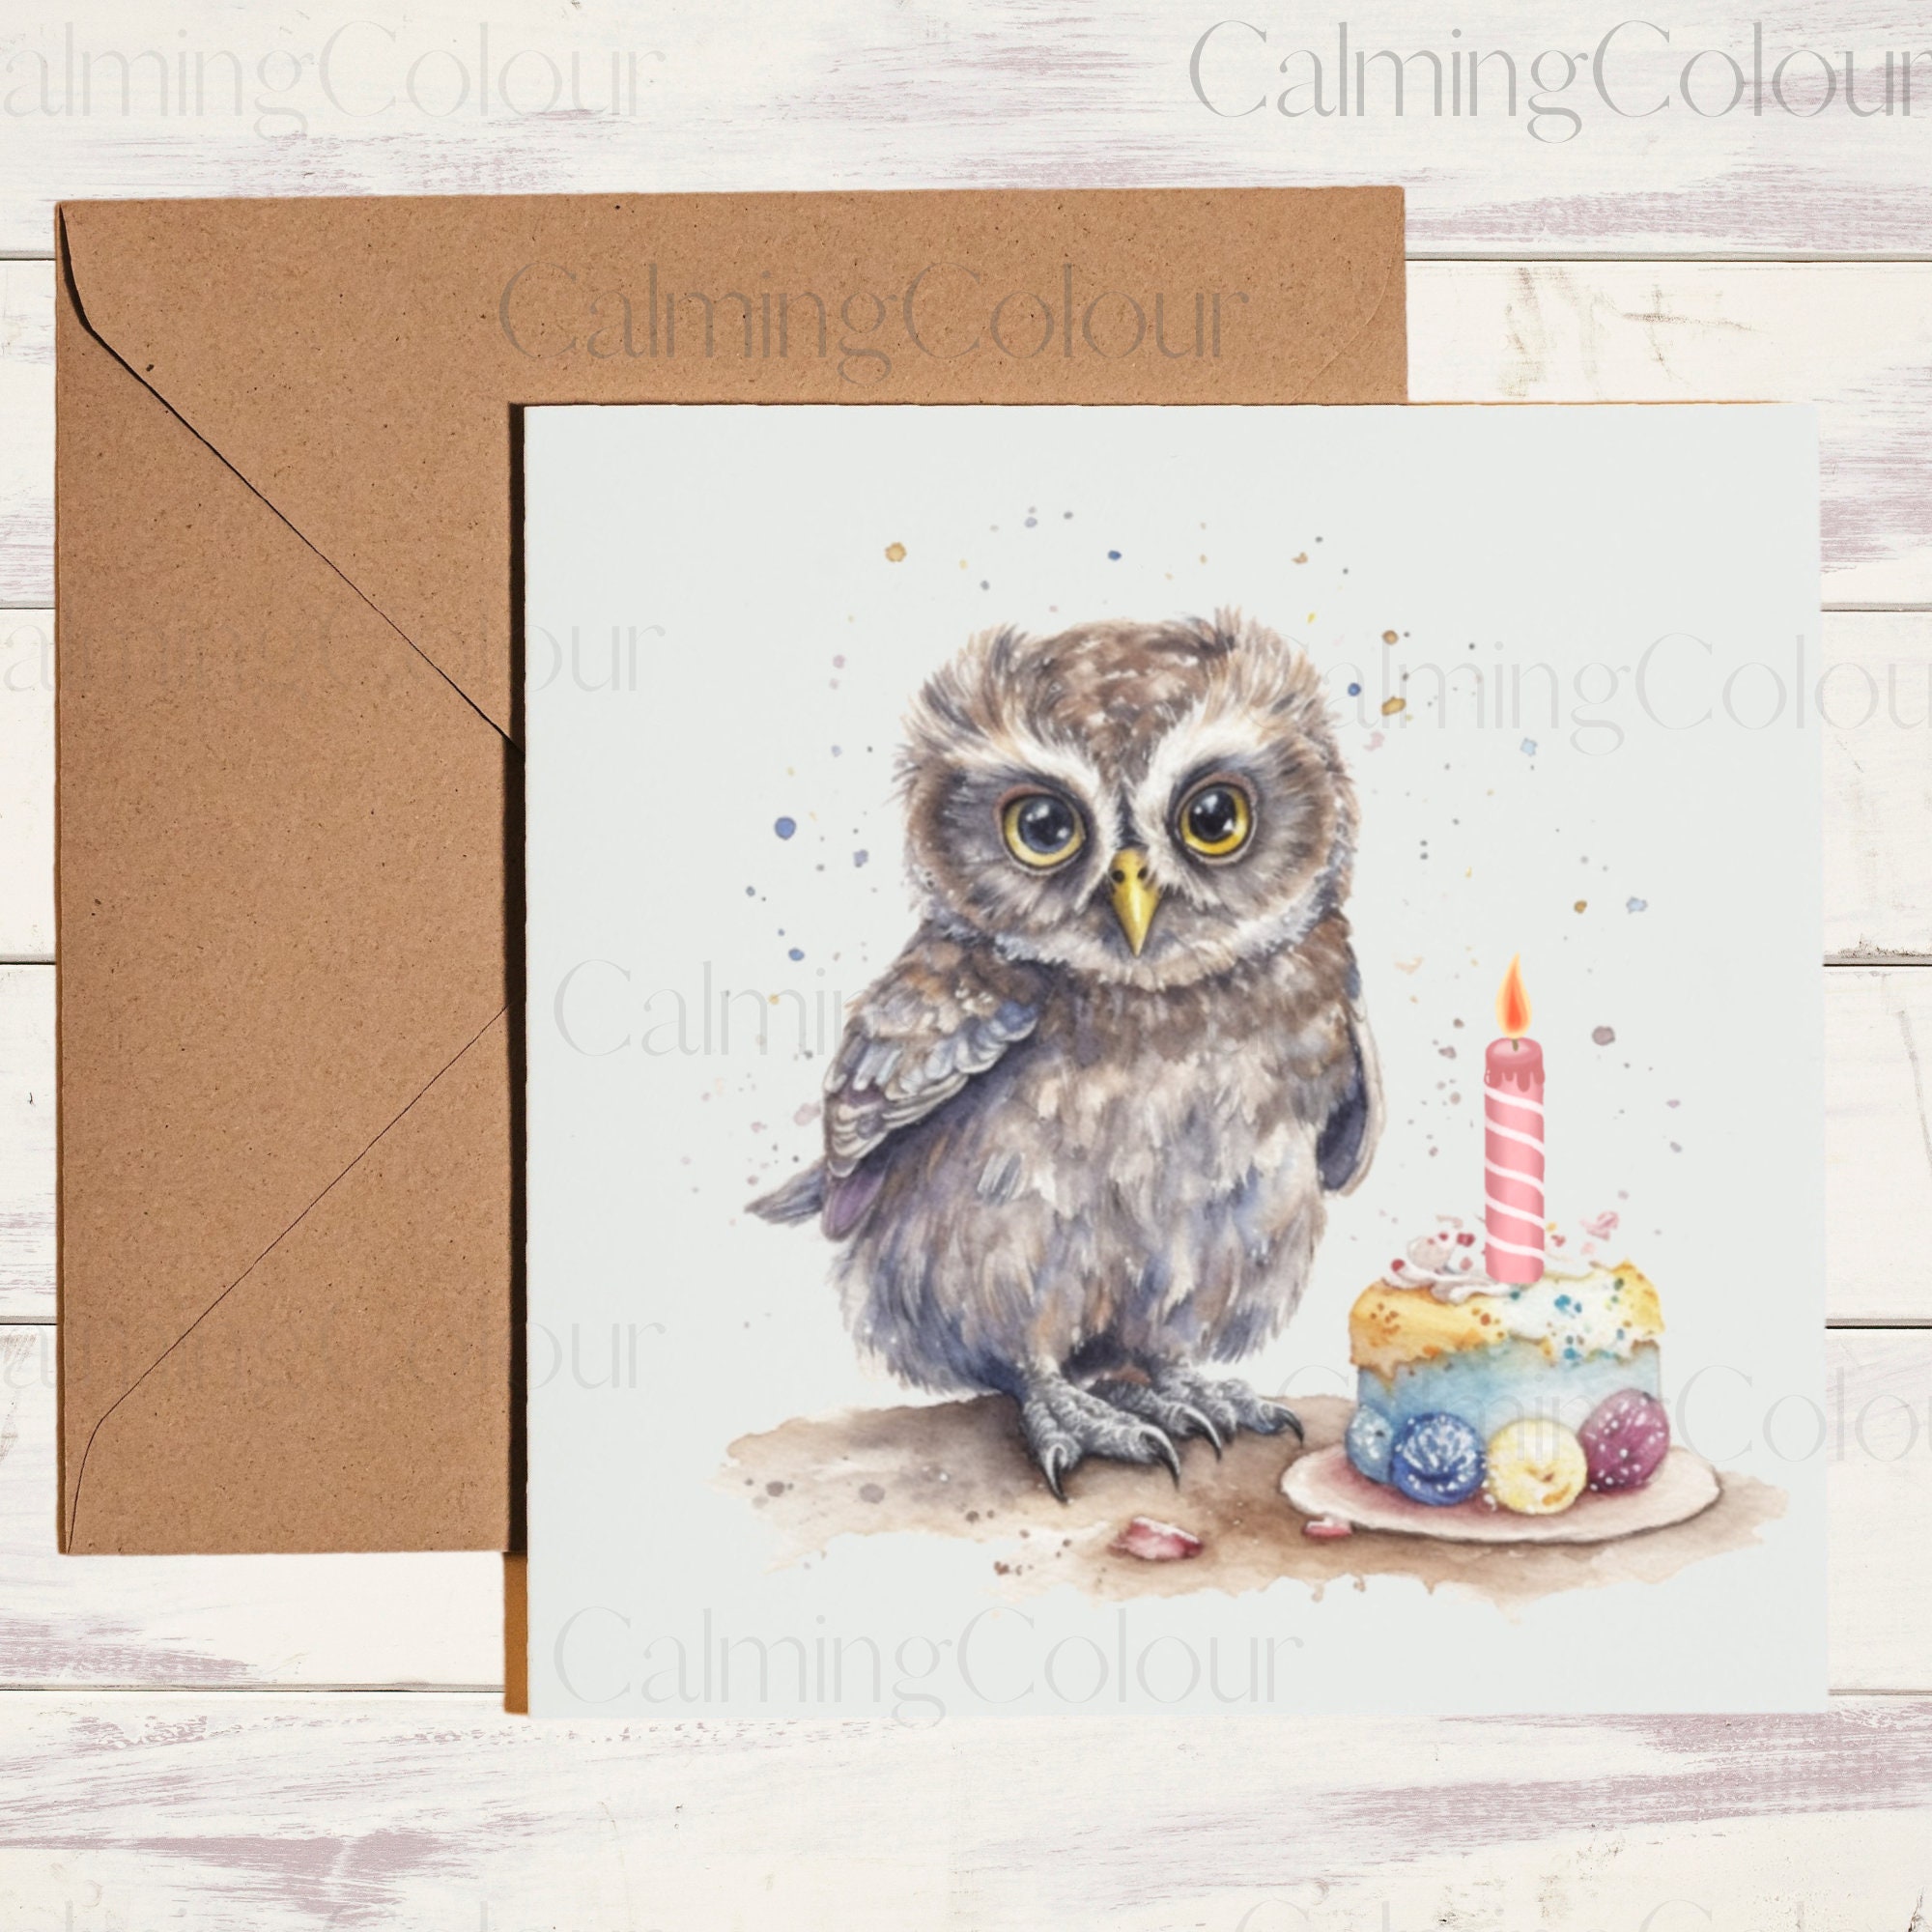 Owl Birthday Card | Card for Owl lover | Single card, blank on the inside